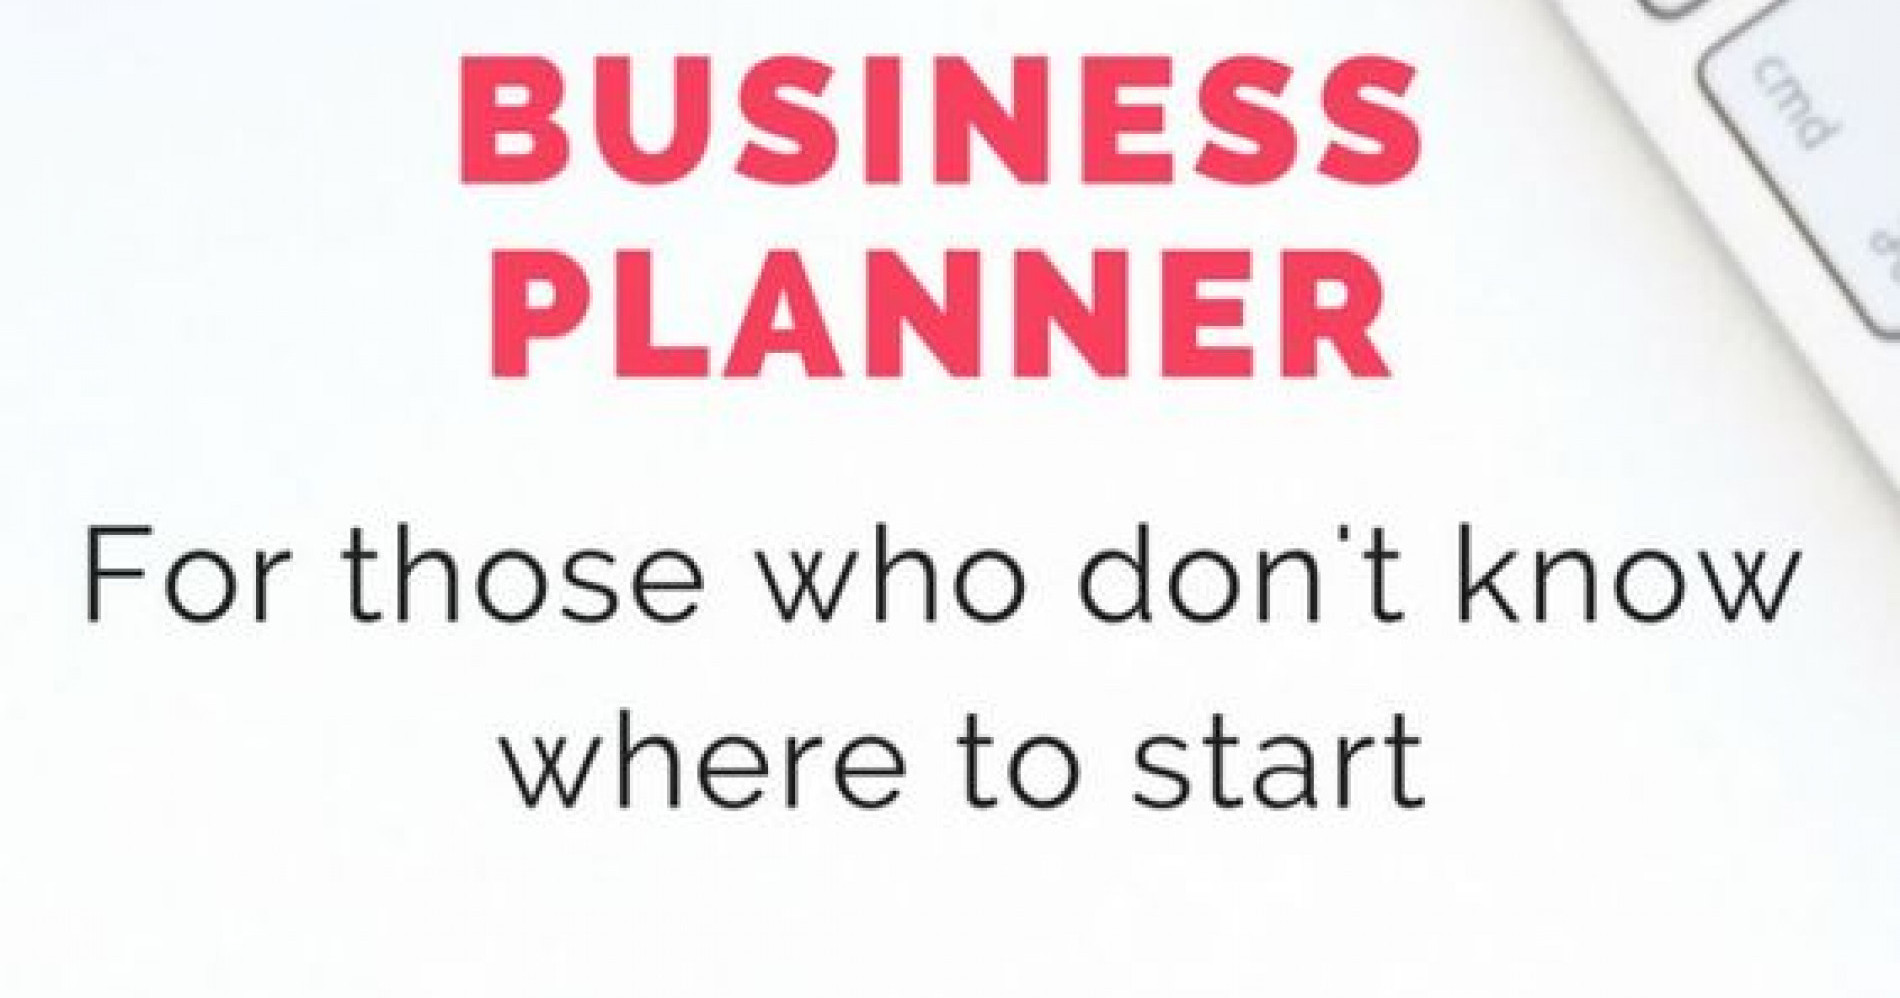 The Startup Business Planner For Female Entrepreneurs (michelleharry.com)